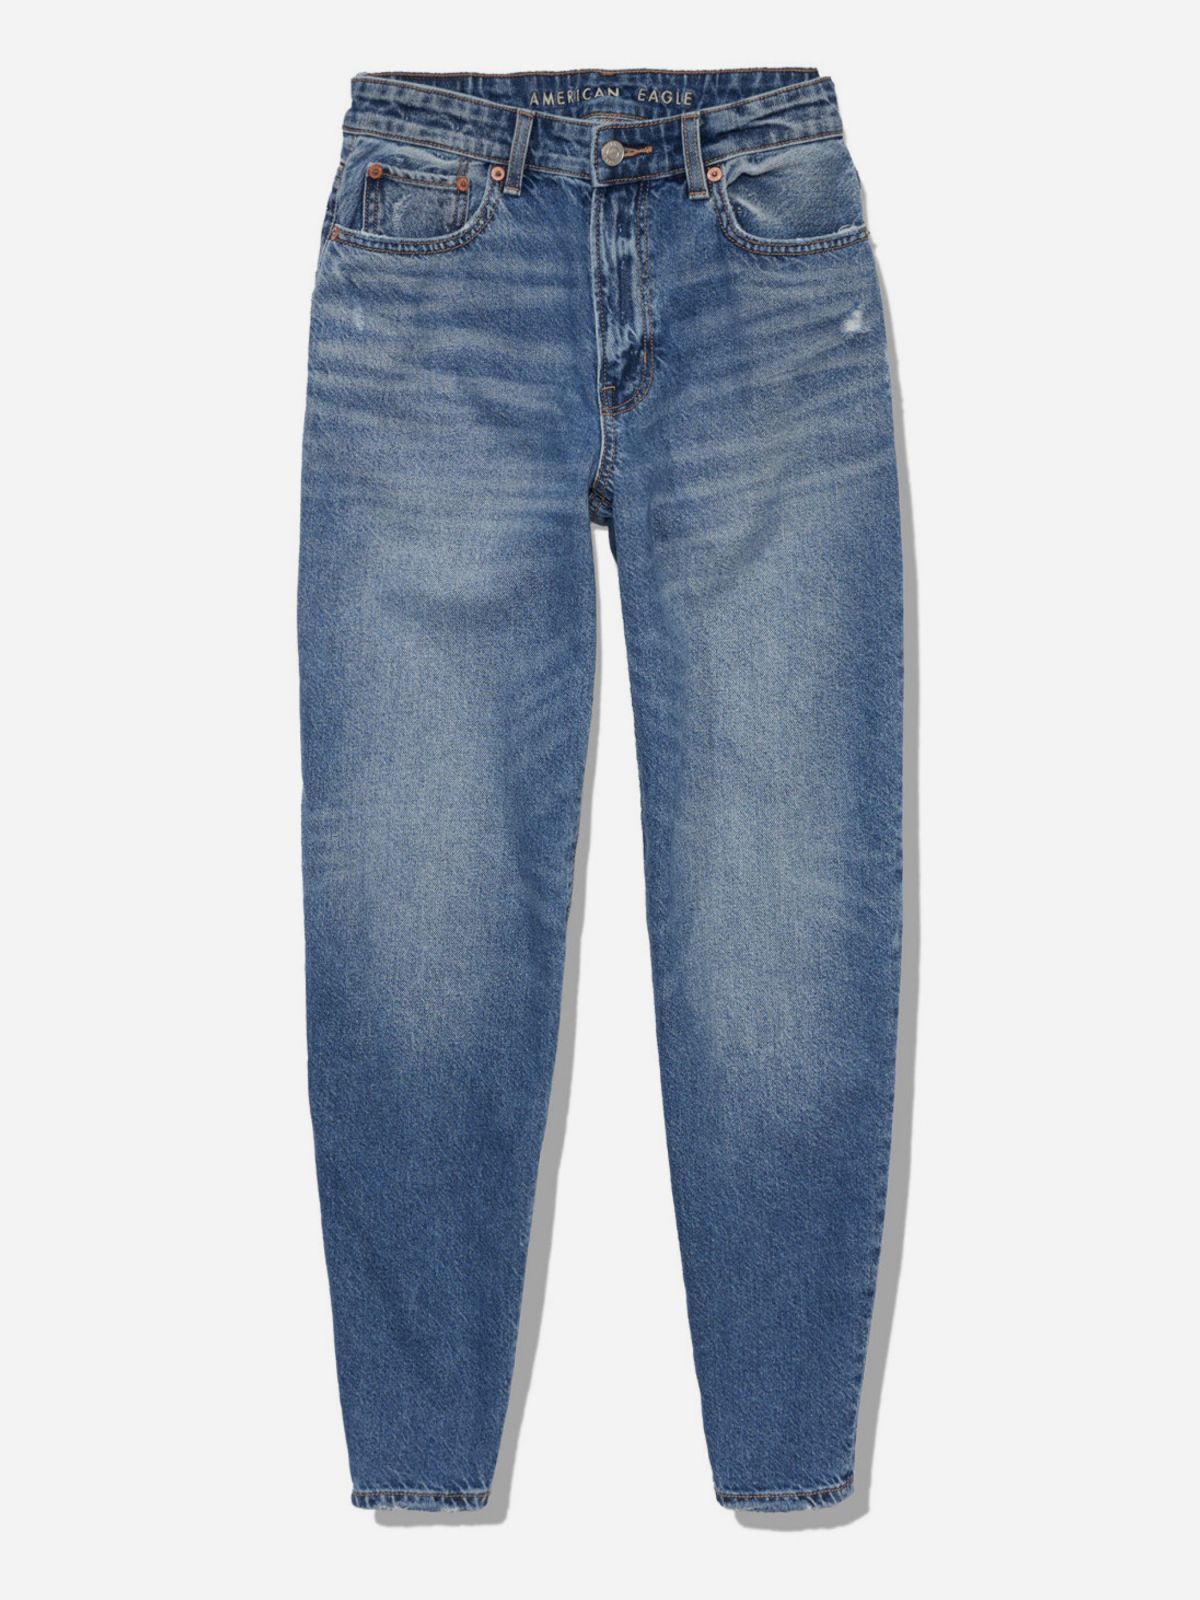  ג'ינס ארוך בגזרת BALLOON JEAN / נשים של AMERICAN EAGLE